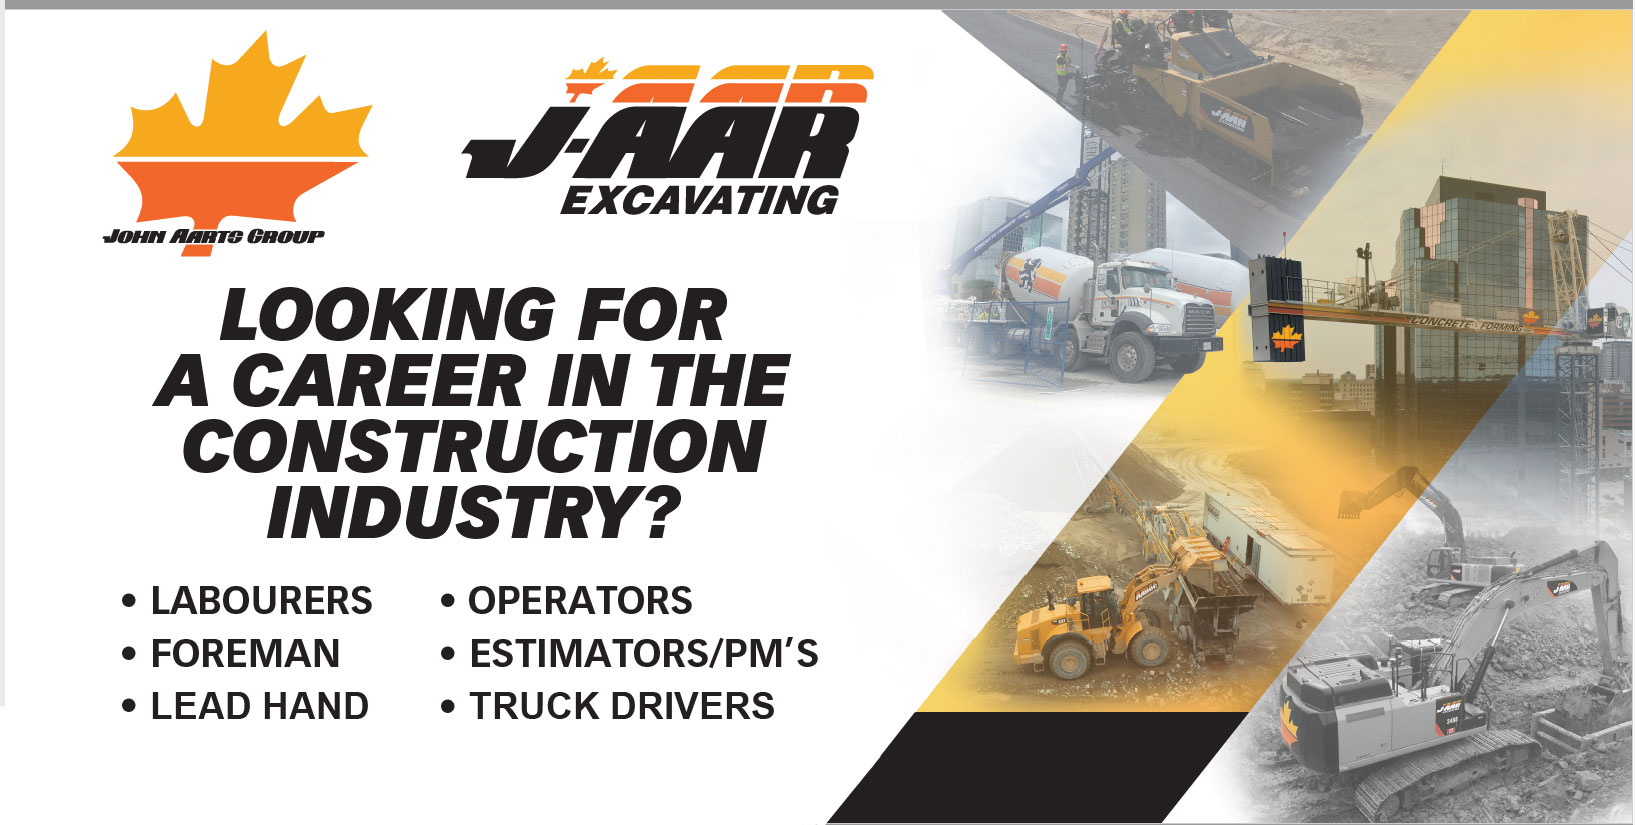 J-AAR Excavating Emplyment Opportunities